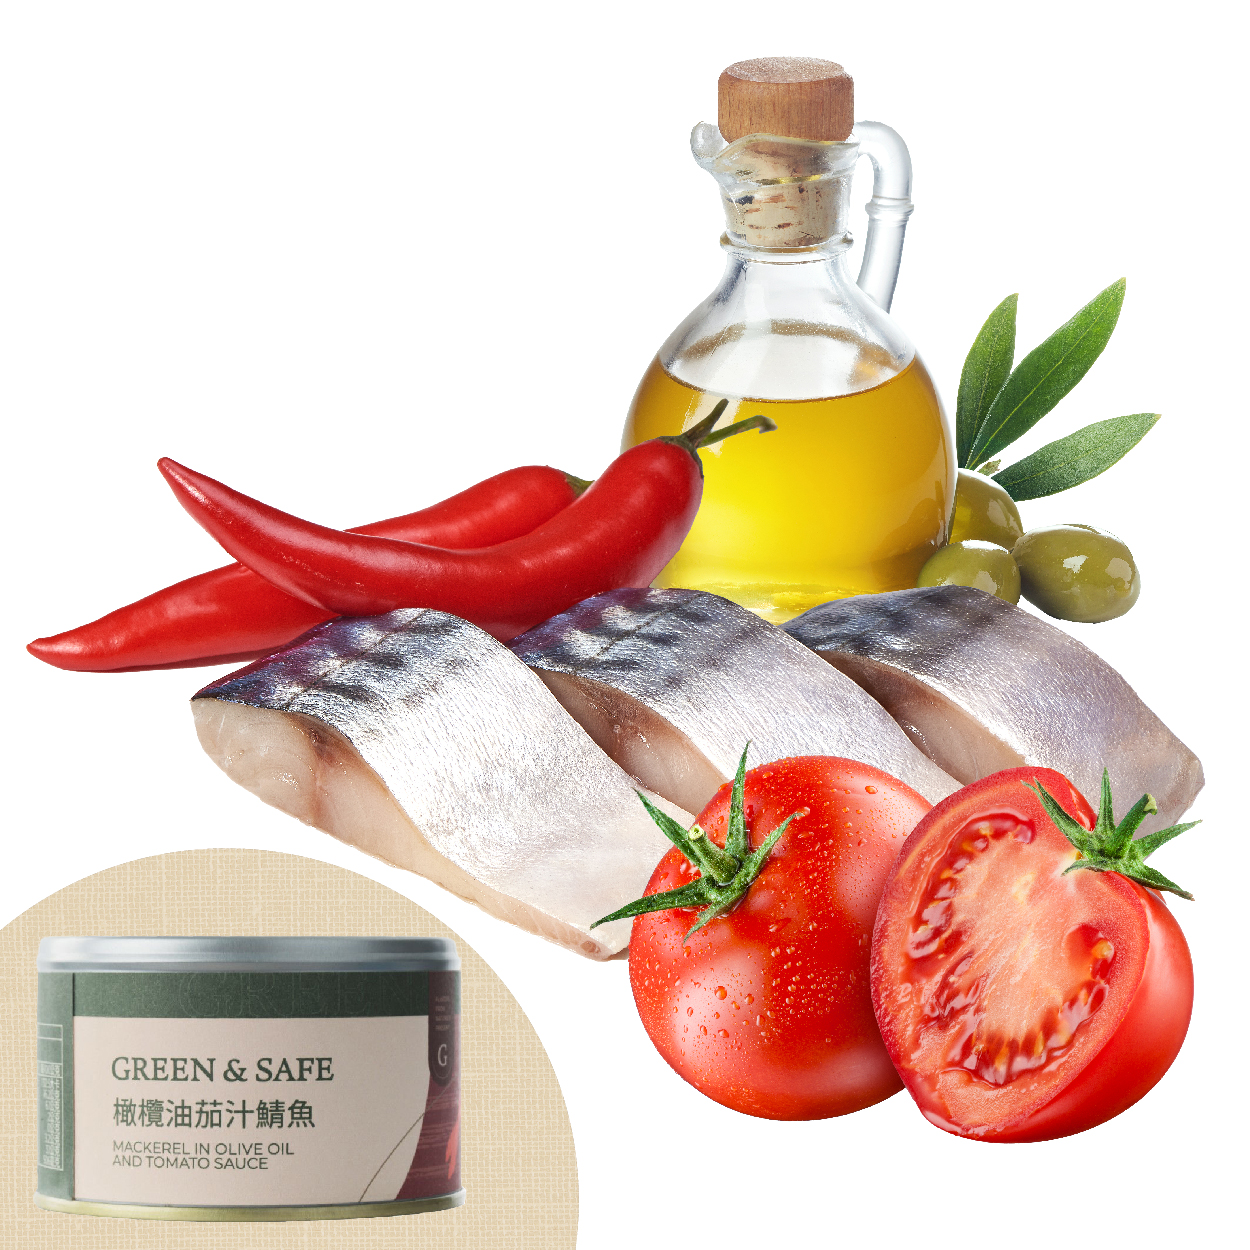 GREEN&SAFE 橄欖油茄汁鯖魚 封不住罐中海味與茄紅素 鮮味Ｘ酸甜的奇妙融合